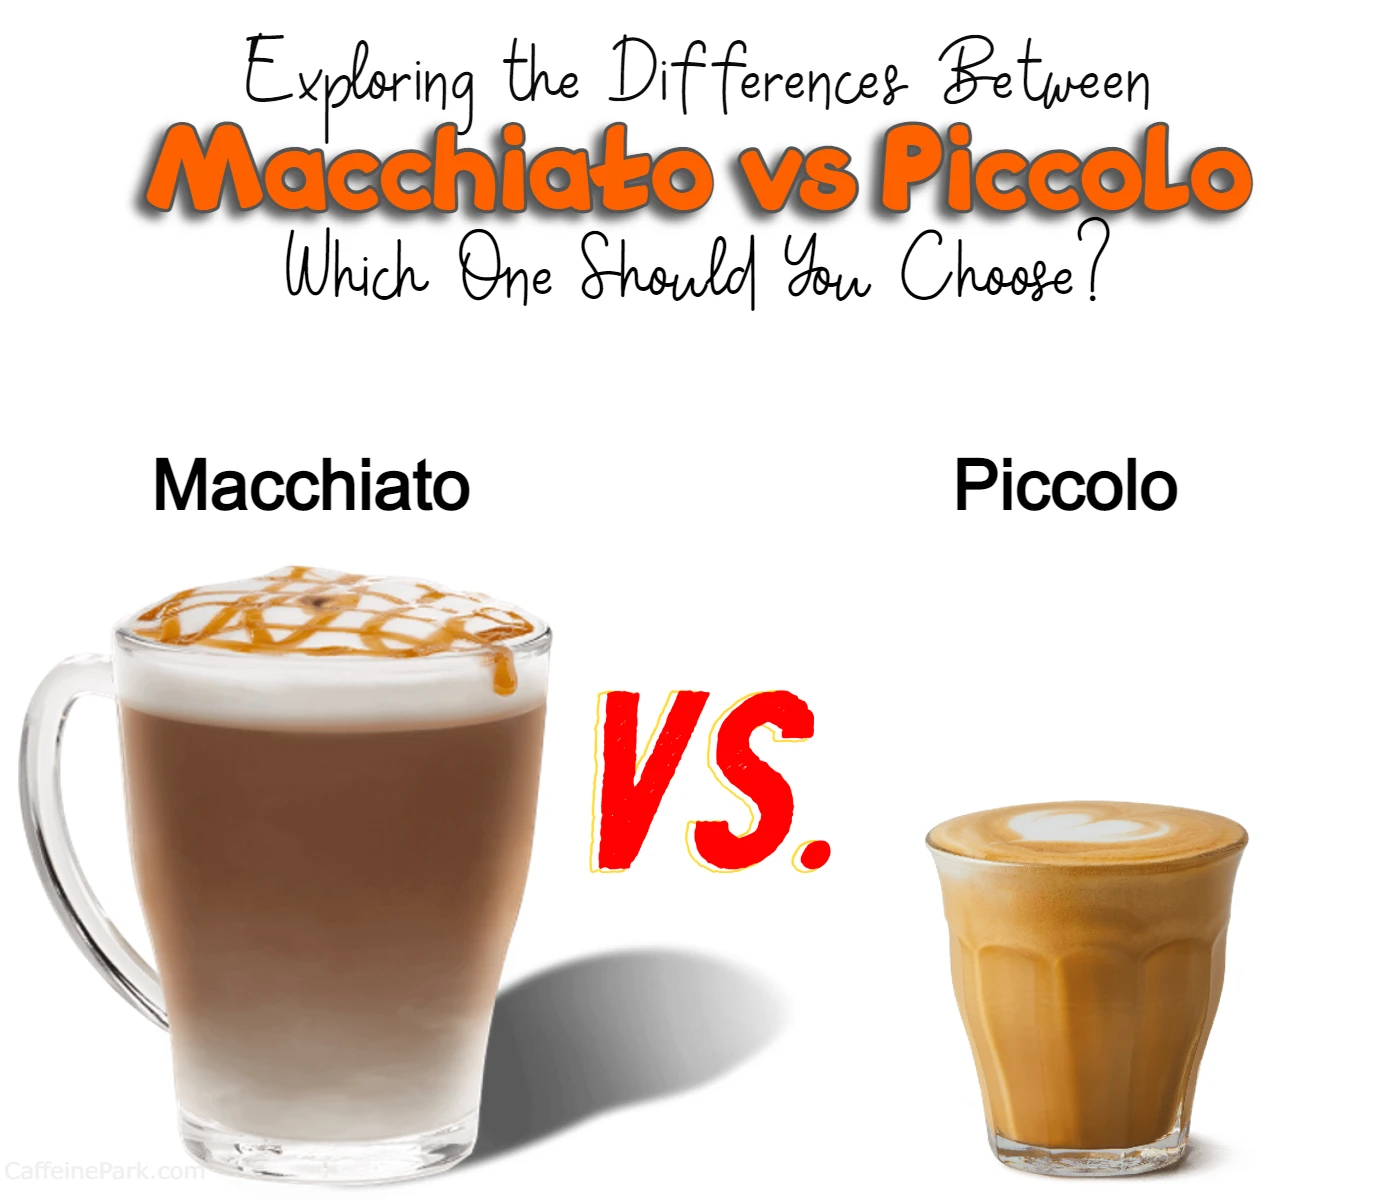 Piccolo, Machiatto & Cortado Difference explained 